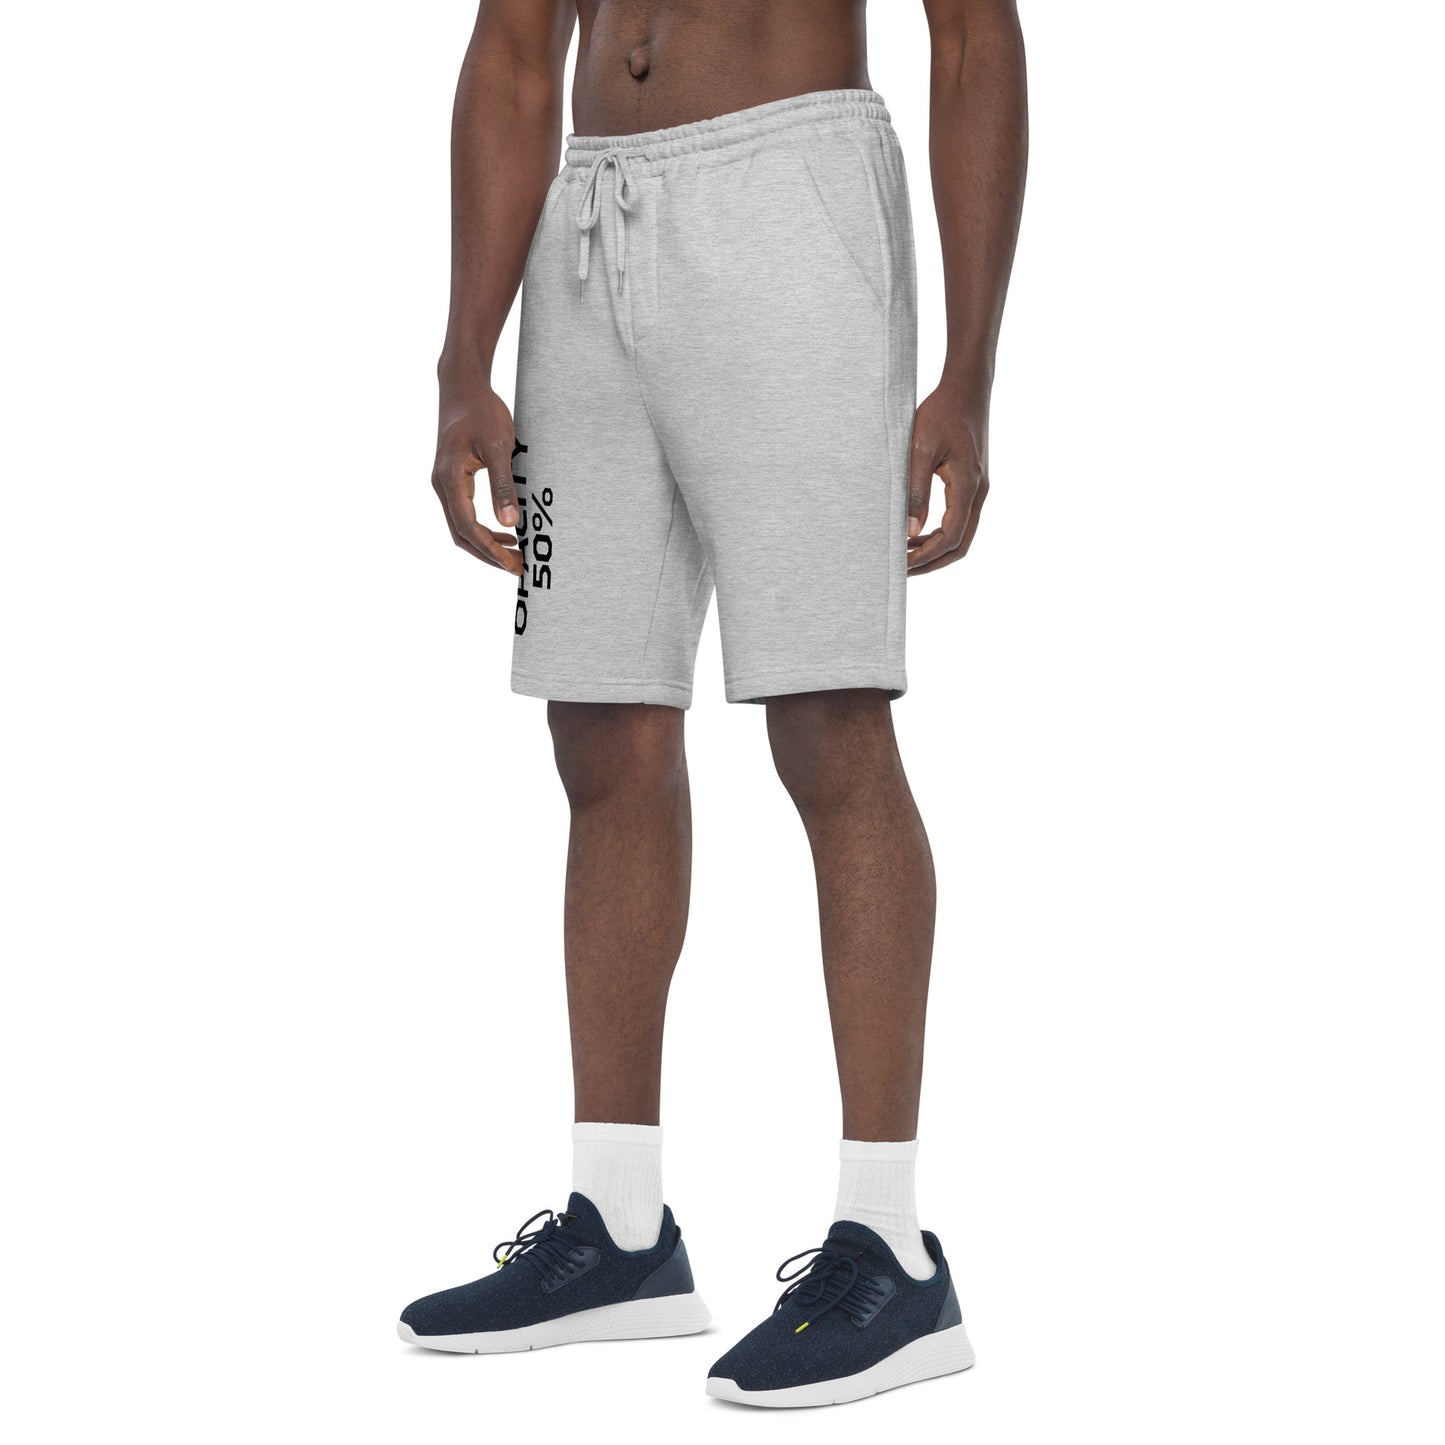 Opacity 50% Men's fleece shorts